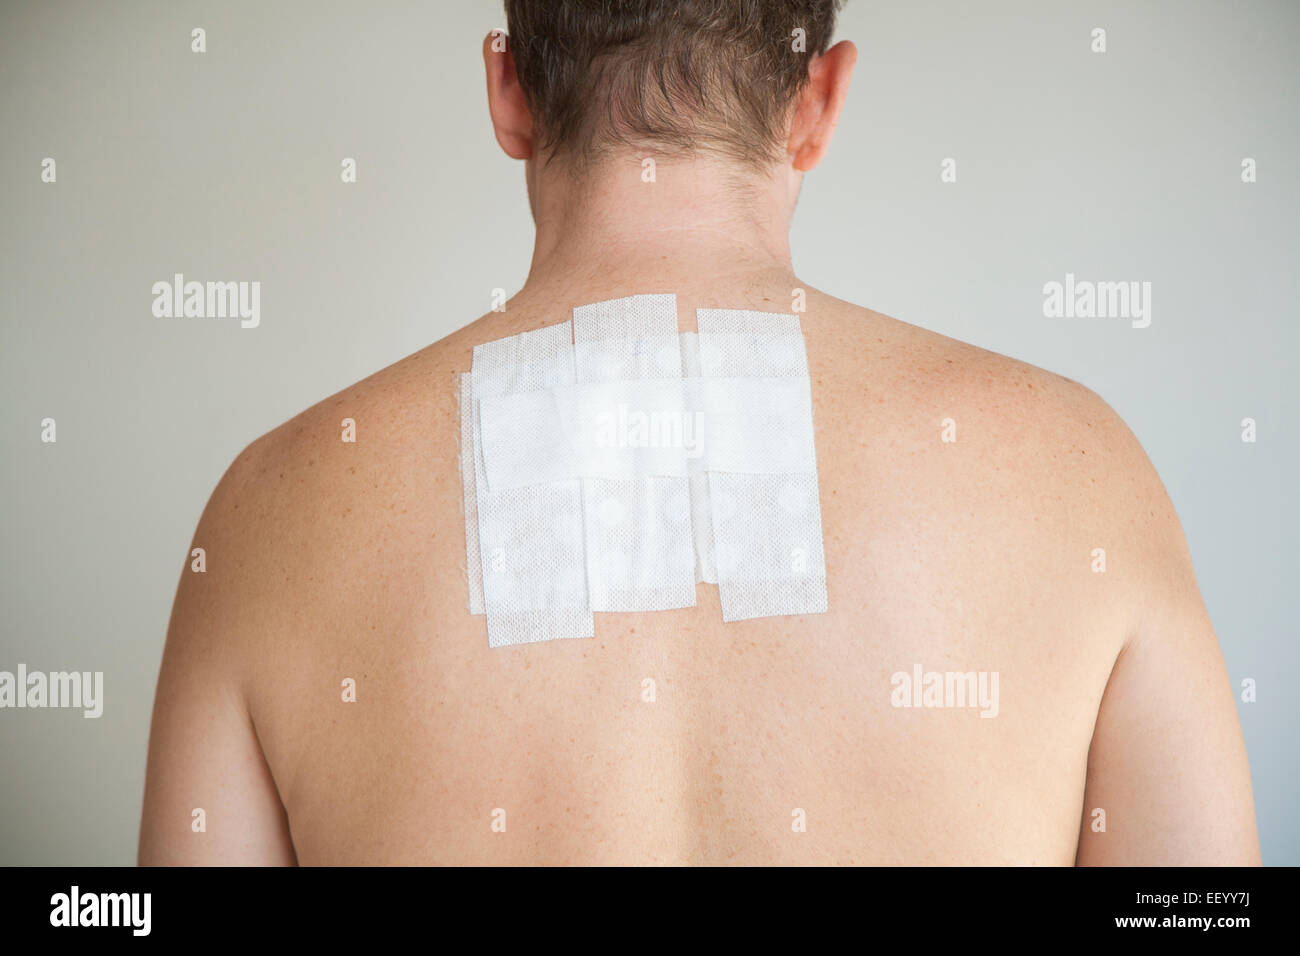 Homme nu de retour avec test d'allergie de contact dans le plâtre adhésif blanc Banque D'Images